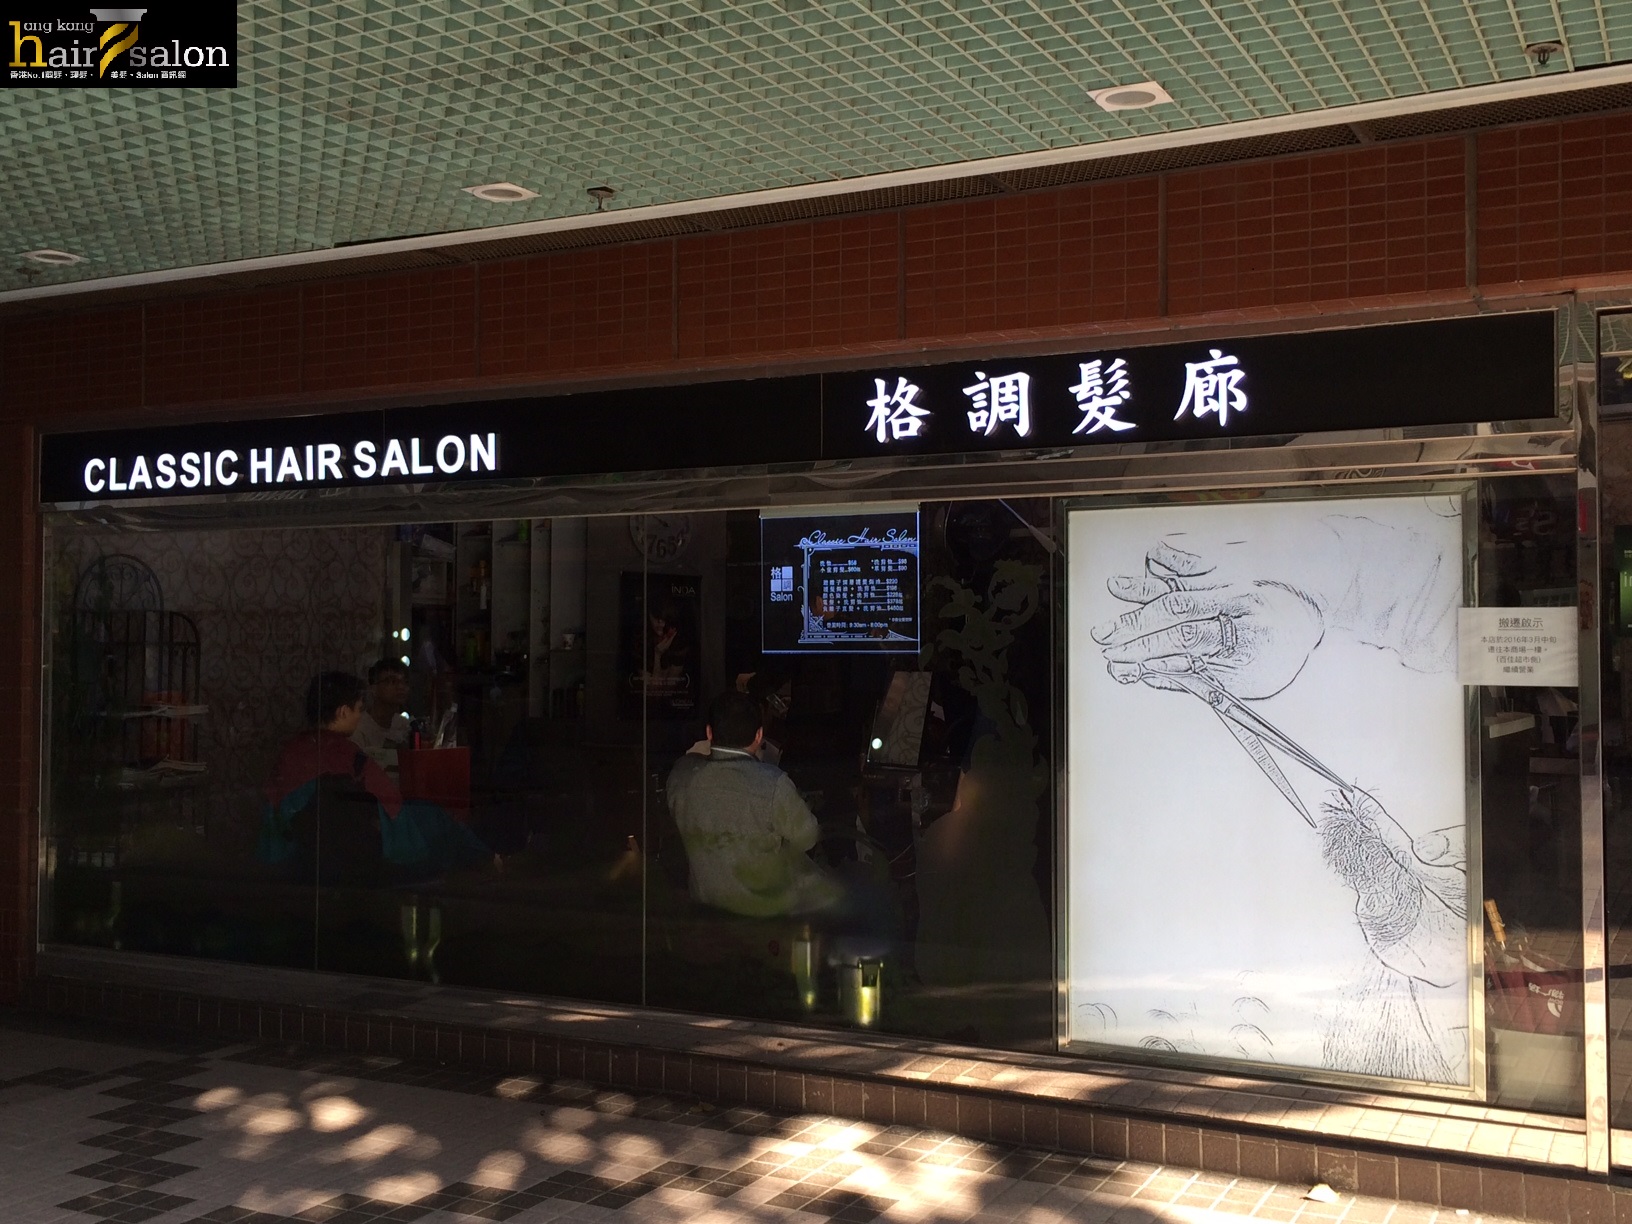 洗剪吹/洗吹造型: 格調髮廊 Classic Hair Salon